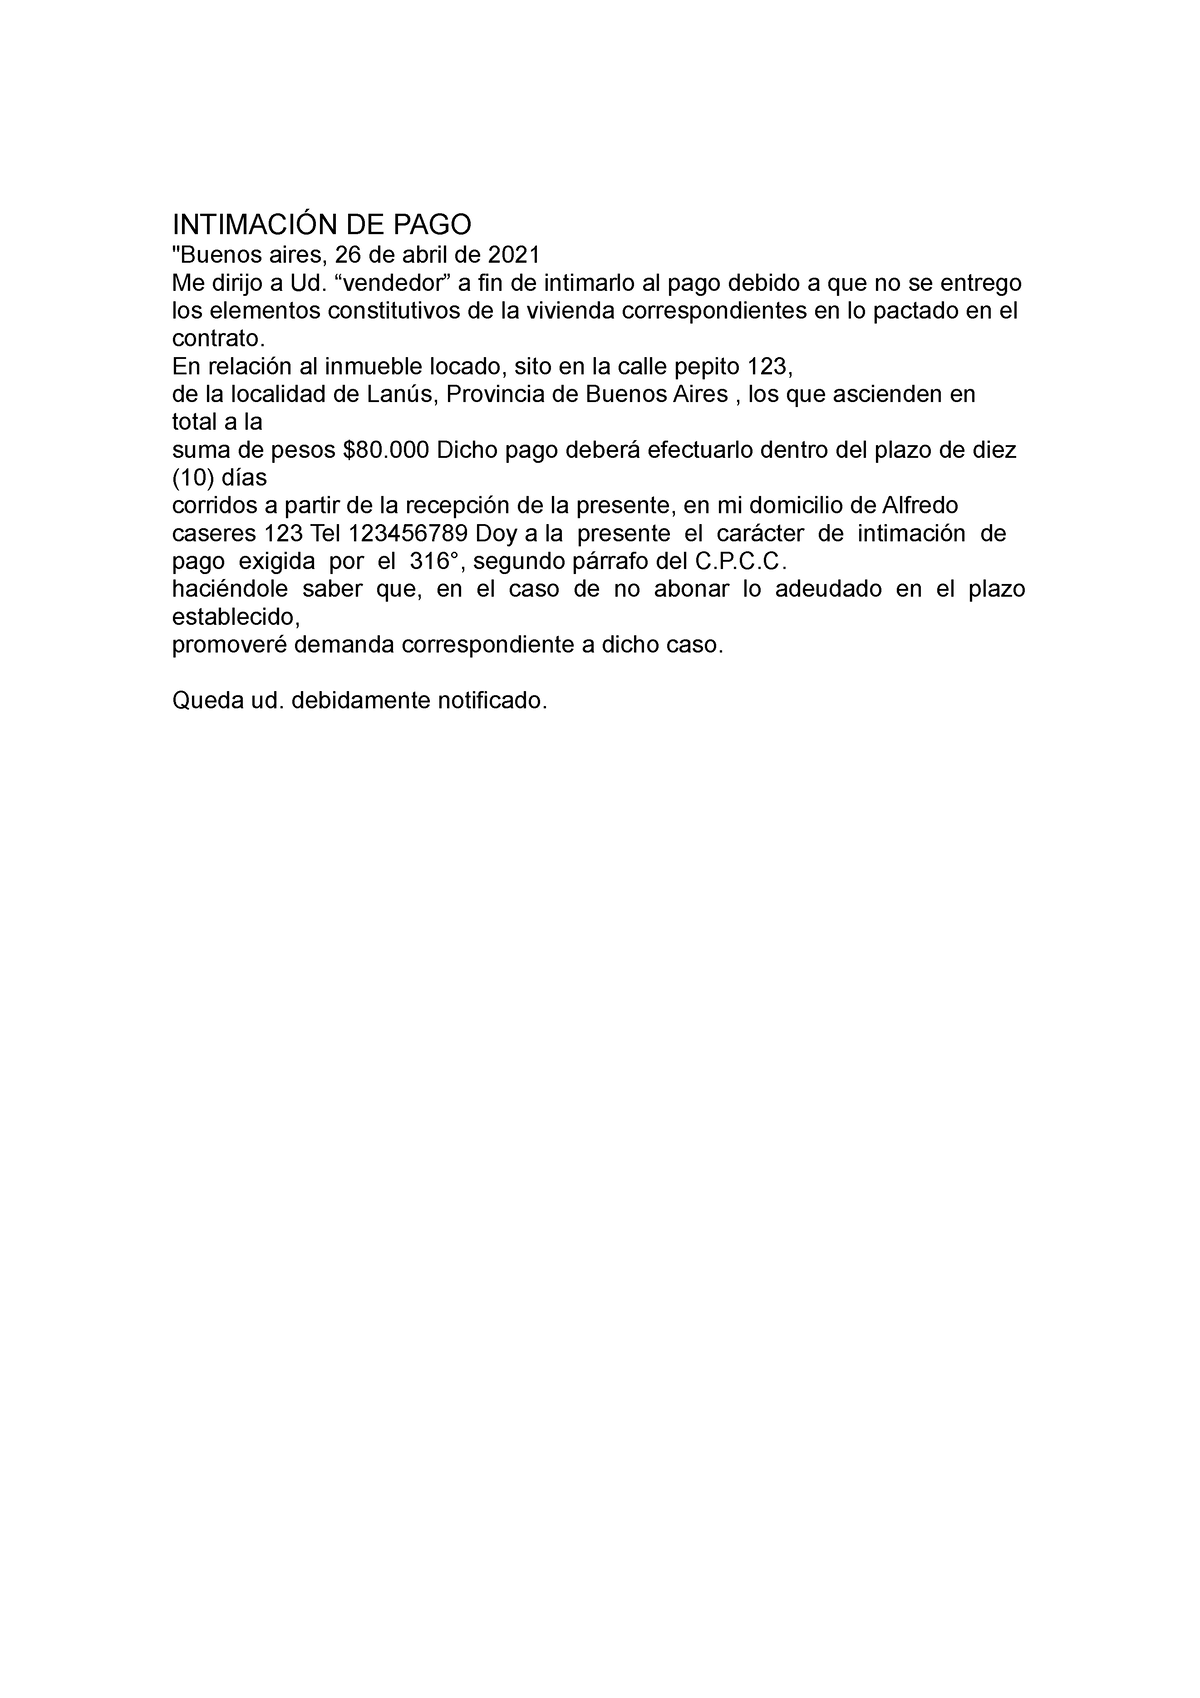 Carta documento Intimación de pago - INTIMACIÓN DE PAGO "Buenos aires,  26 de abril de 2021 Me - Studocu